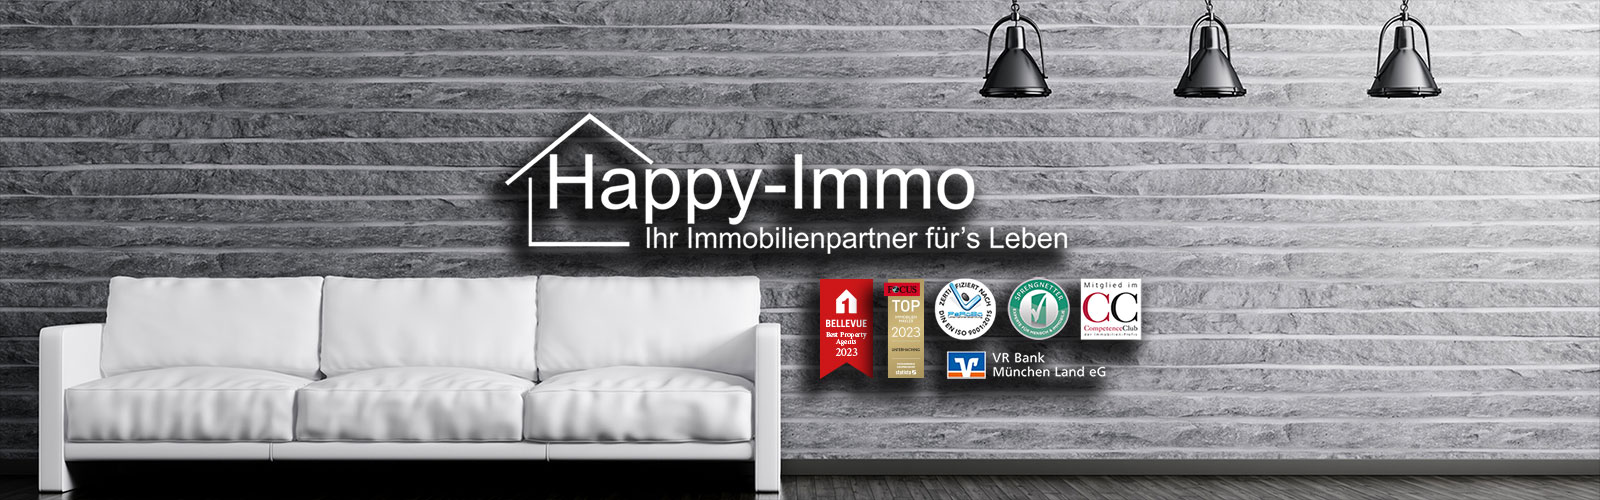 Happy Immo GmbH Immobilienmakler Unterhaching 089-6494870